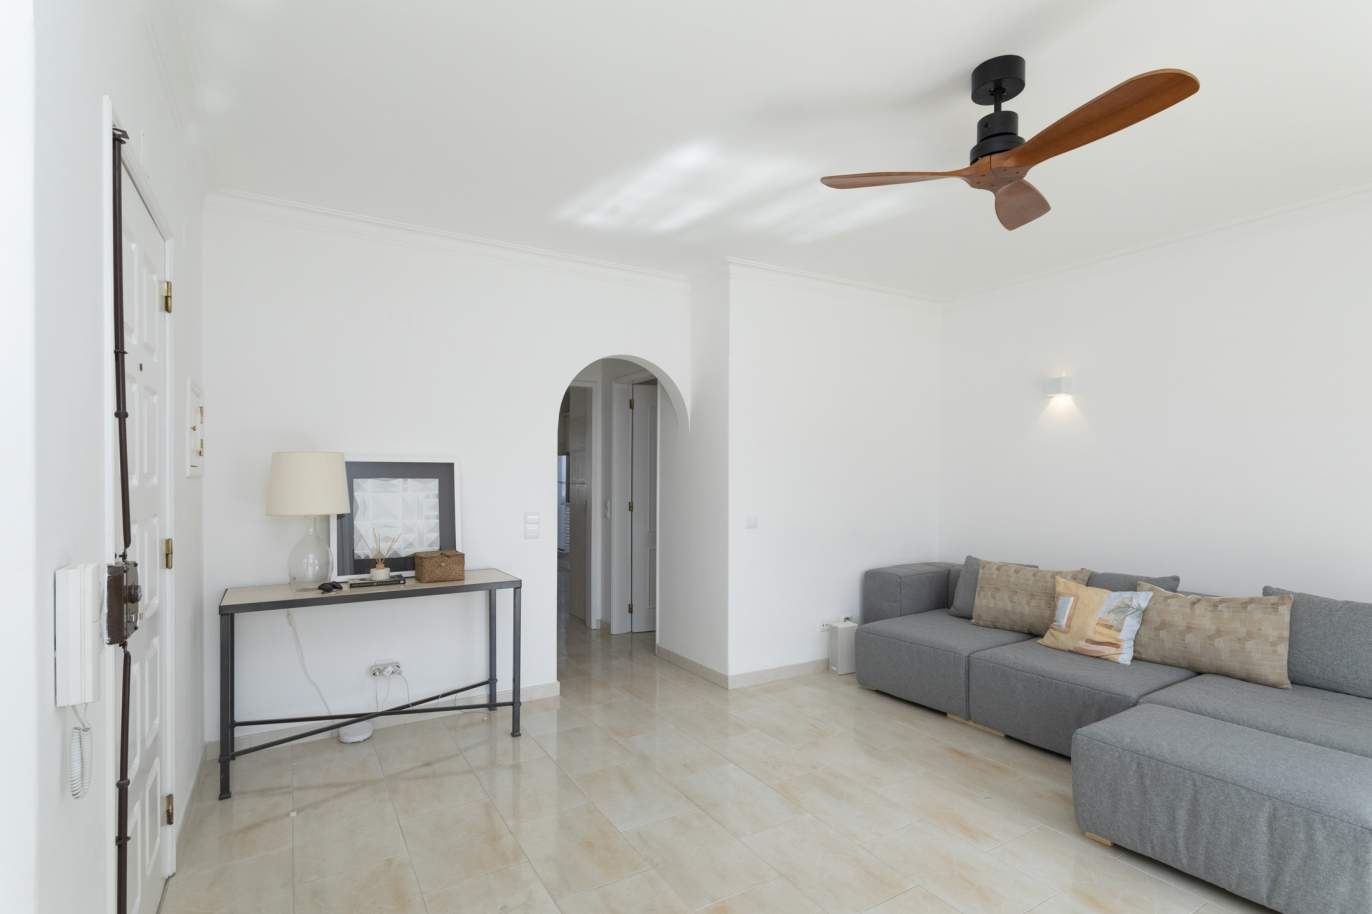 Piso de 1 dormitorio en venta en Quarteira centro, Algarve_204541